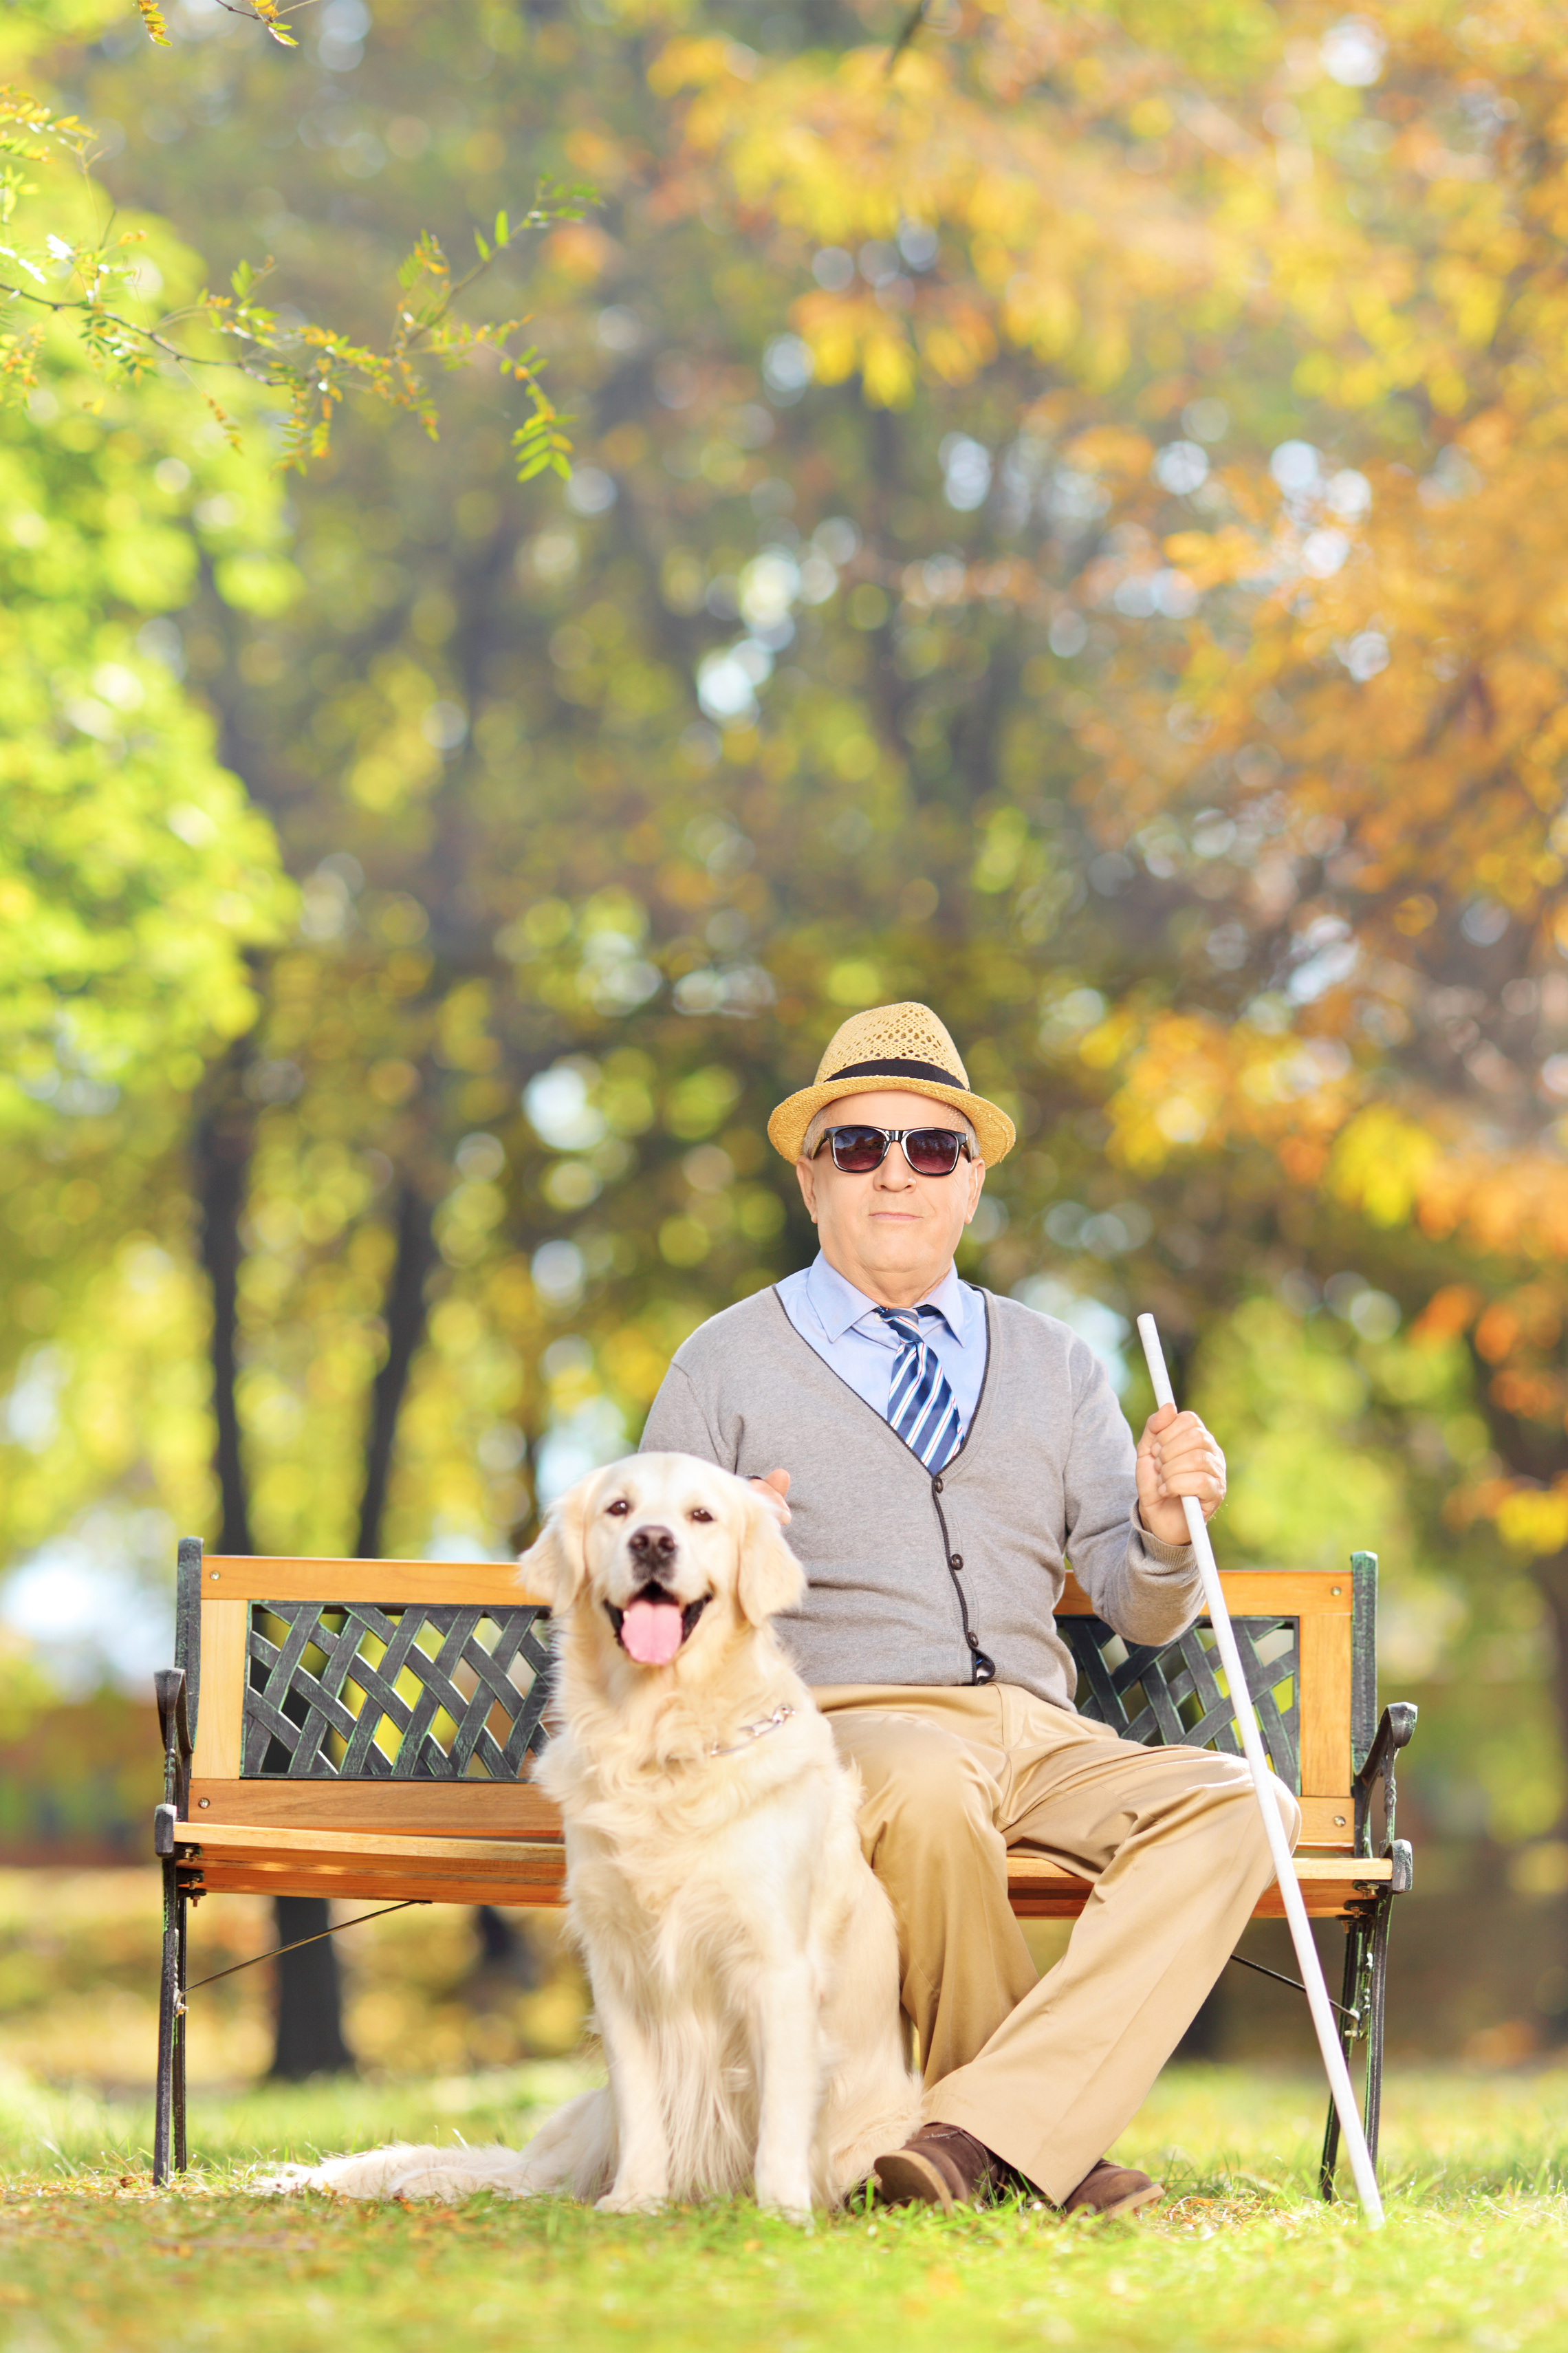 Ein Mann sitzt auf einer Bank in einem Park. Er hält einen Langastock in der hand. Vor ihm sitzt ein Hund